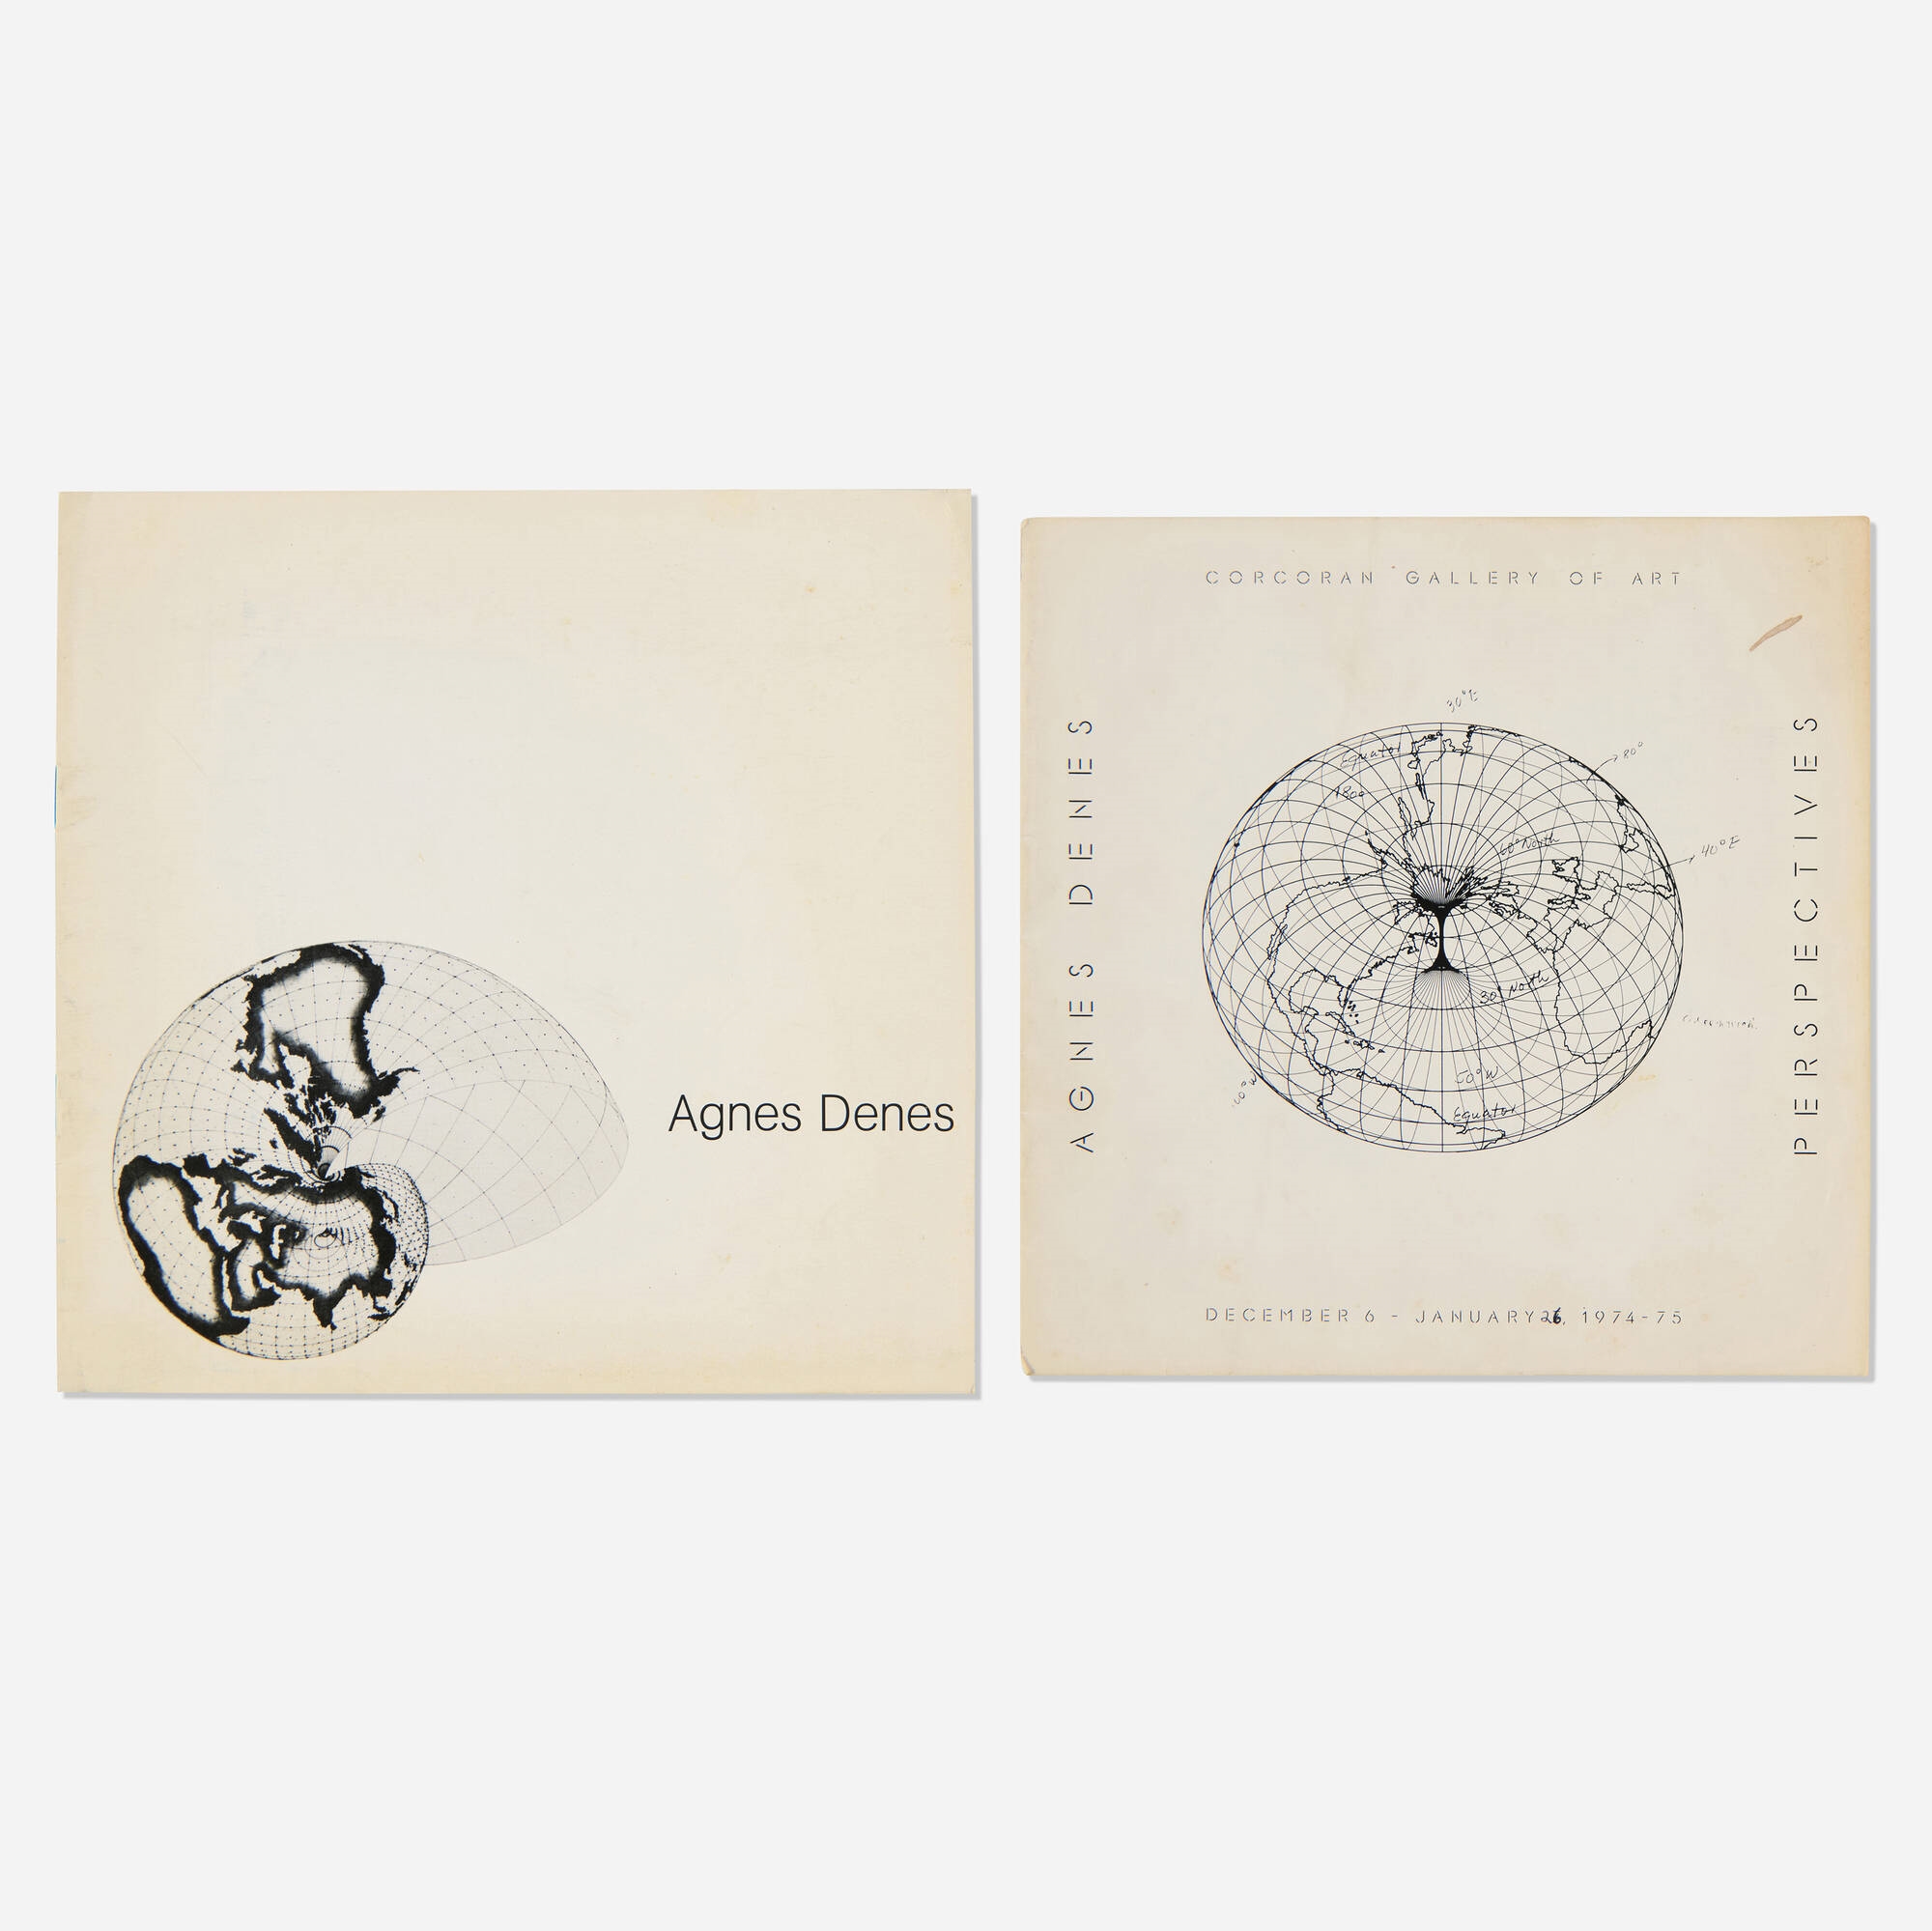 Agnes Denes exhibition catalogs, two - Agnes Denes